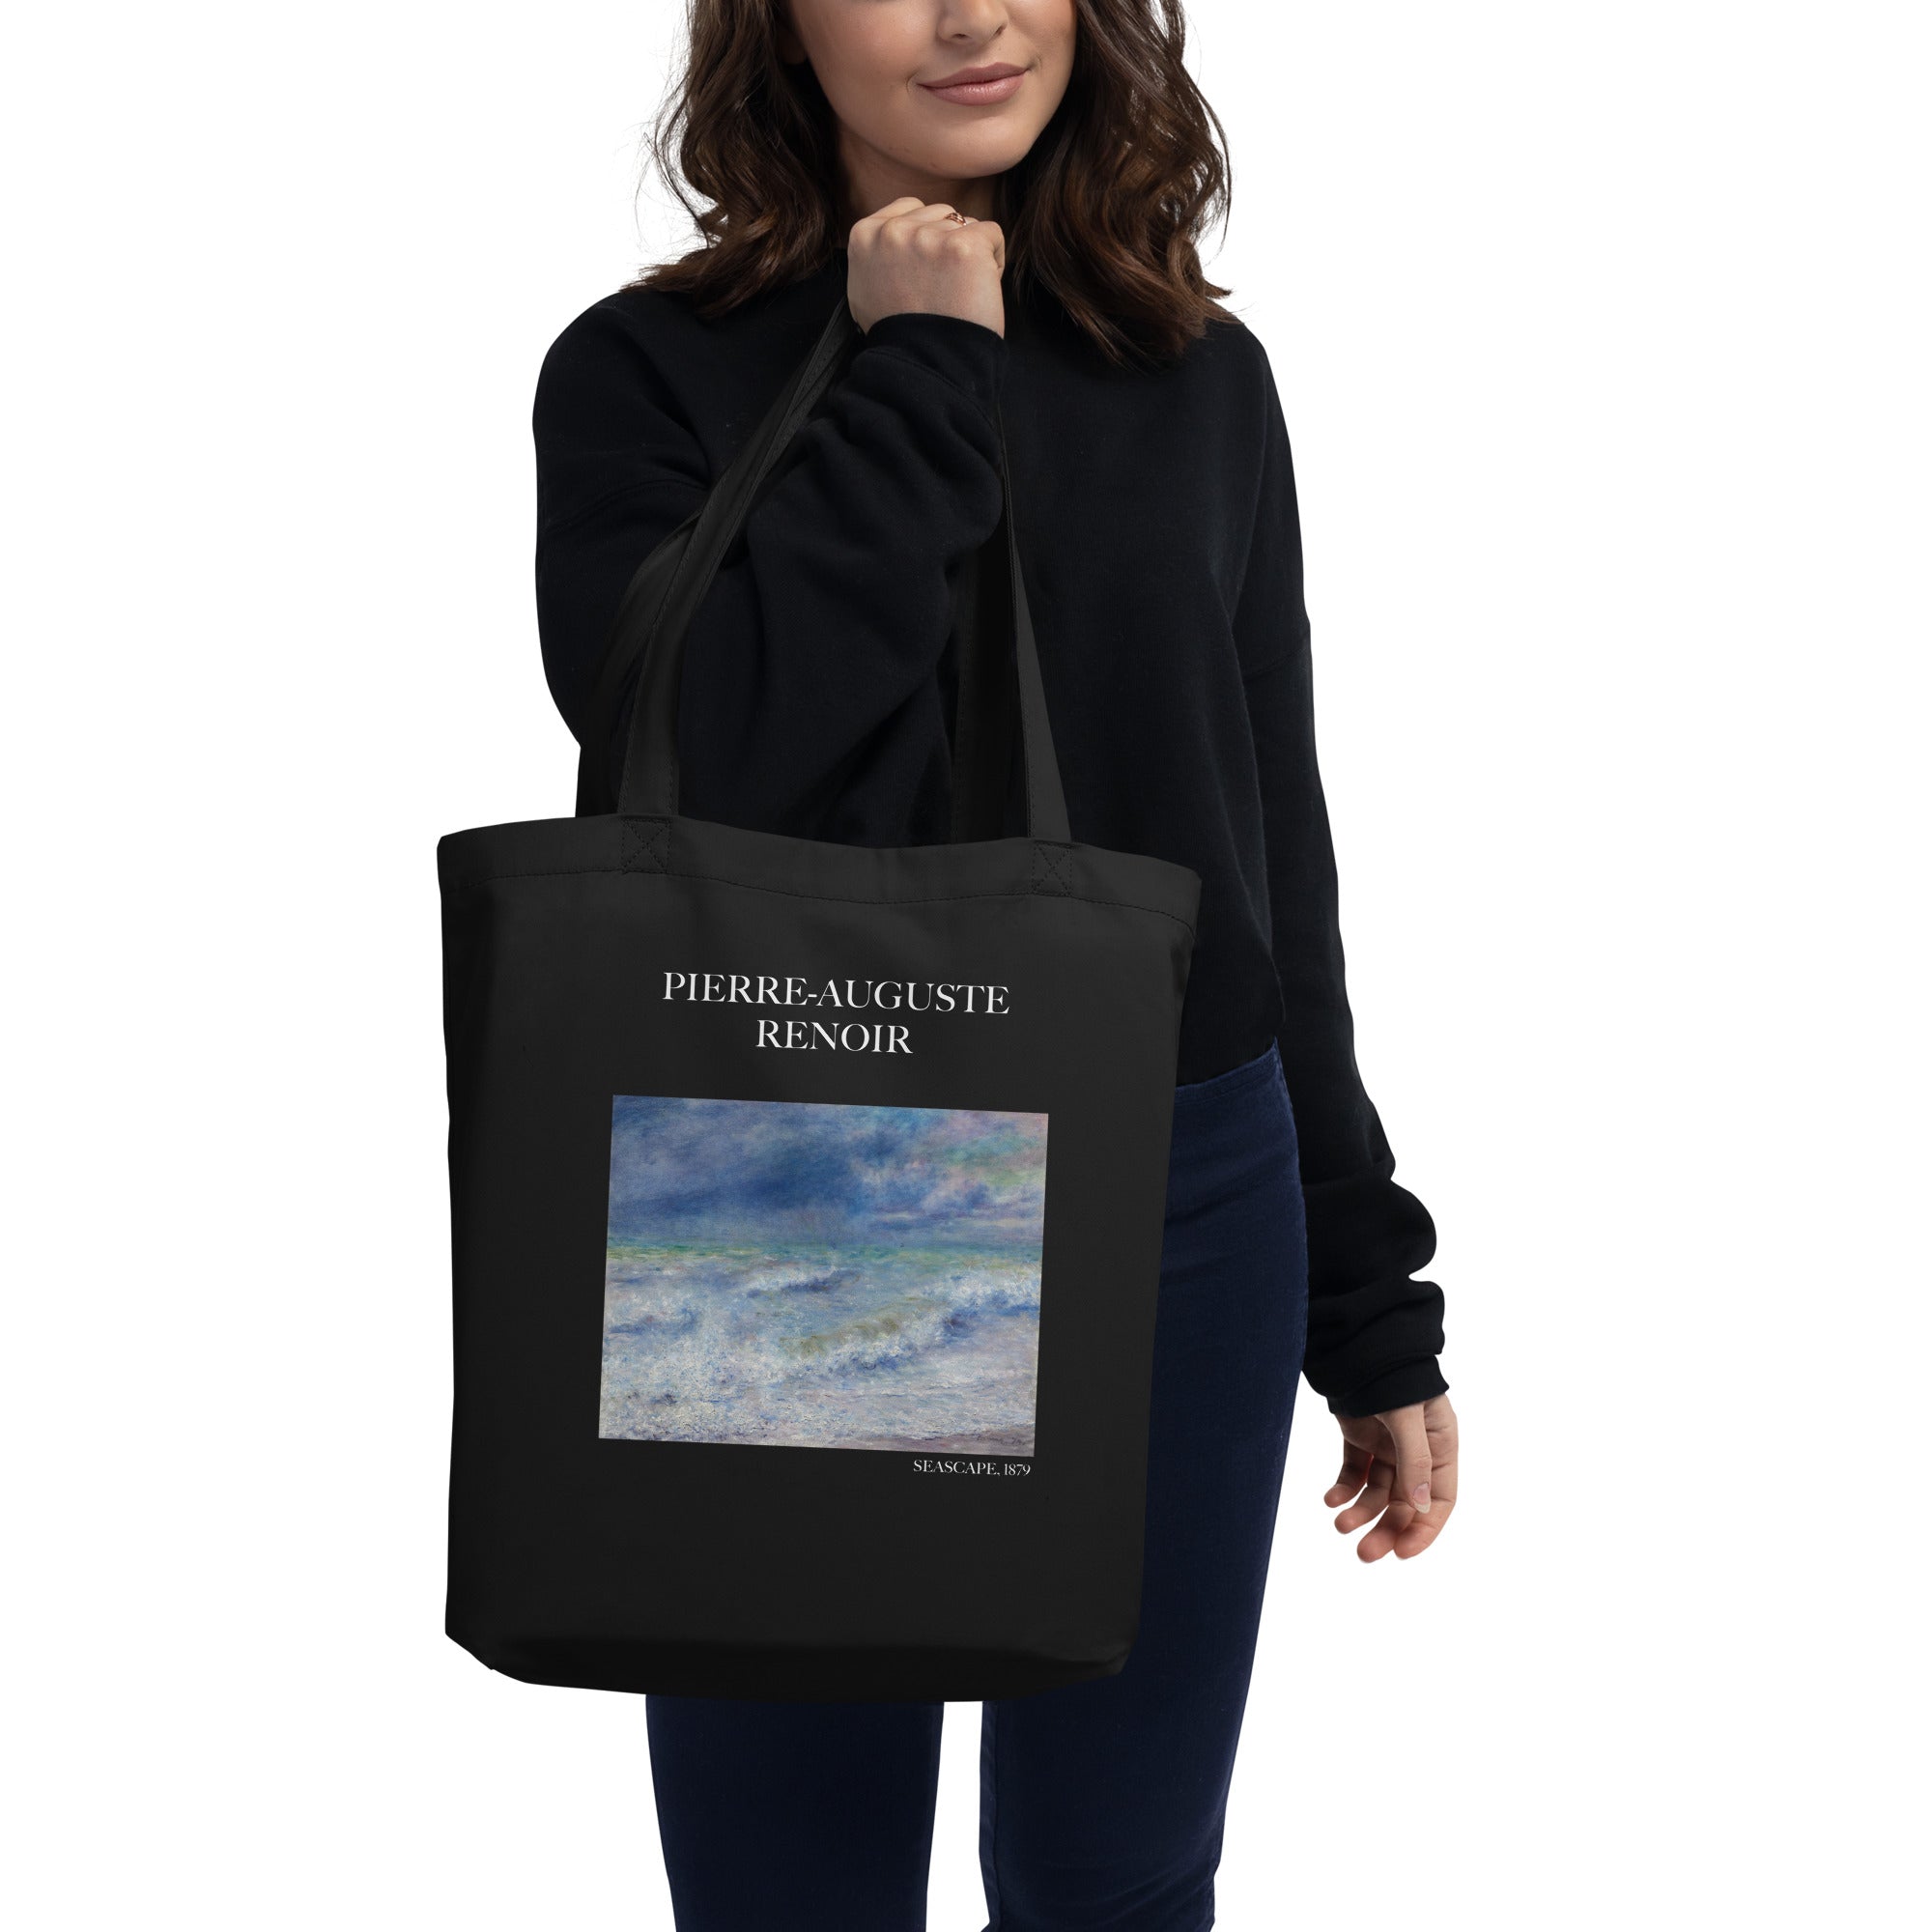 Pierre-Auguste Renoir 'Seascape' Famous Painting Totebag | Eco Friendly Art Tote Bag